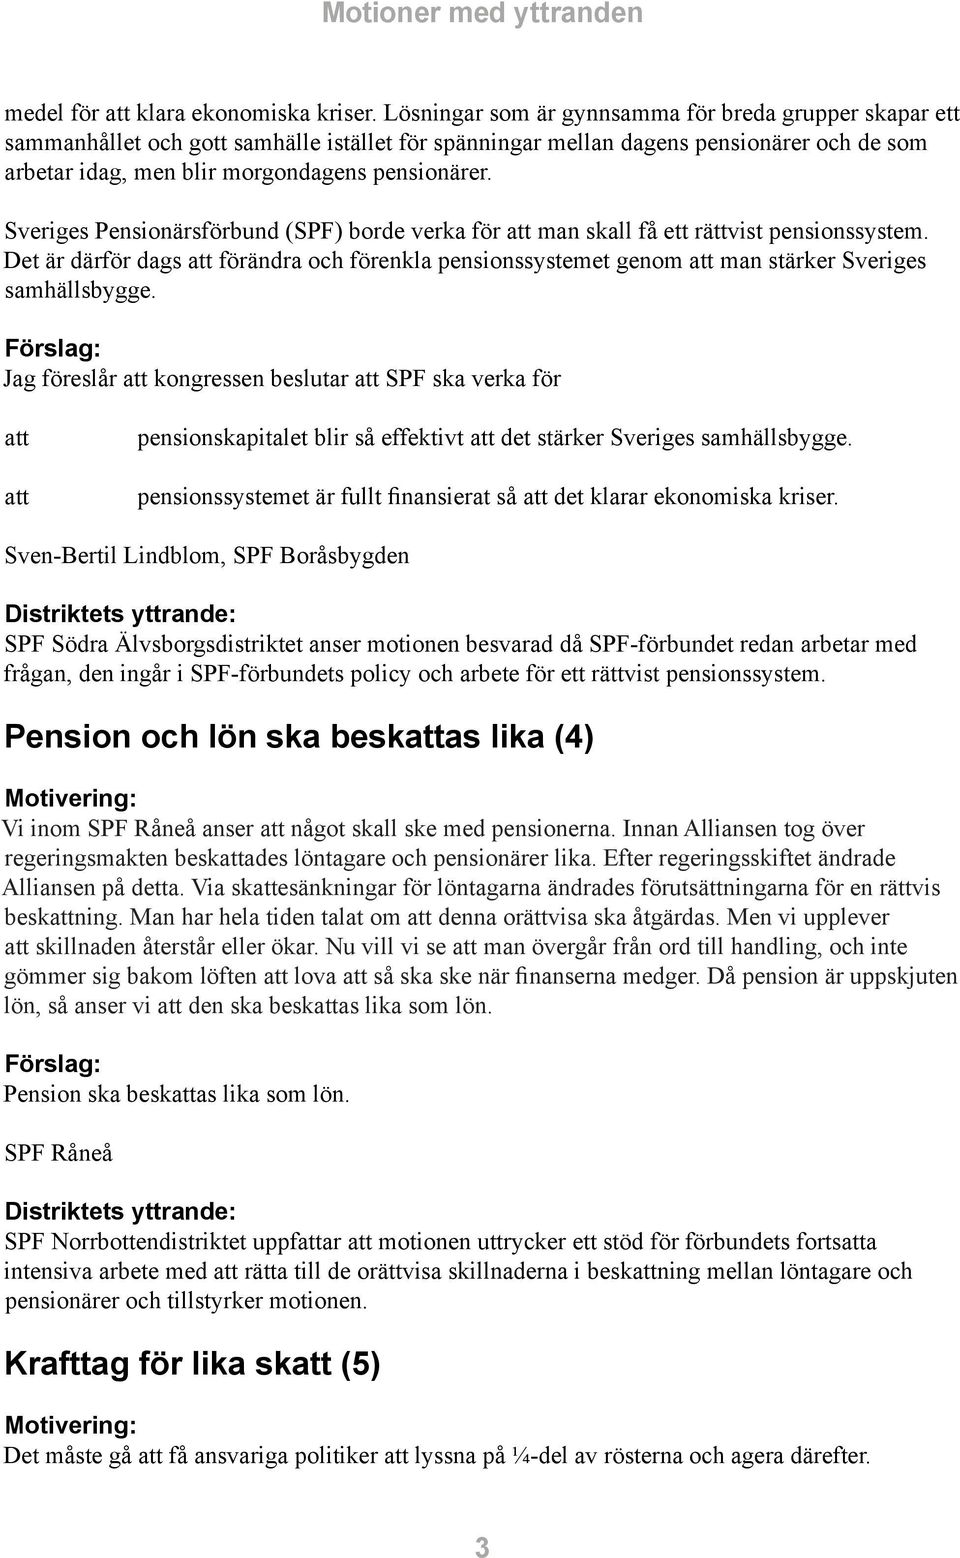 Sveriges Pensionärsförbund (SPF) borde verka för man skall få ett rättvist pensionssystem. Det är därför dags förändra och förenkla pensionssystemet genom man stärker Sveriges samhällsbygge.